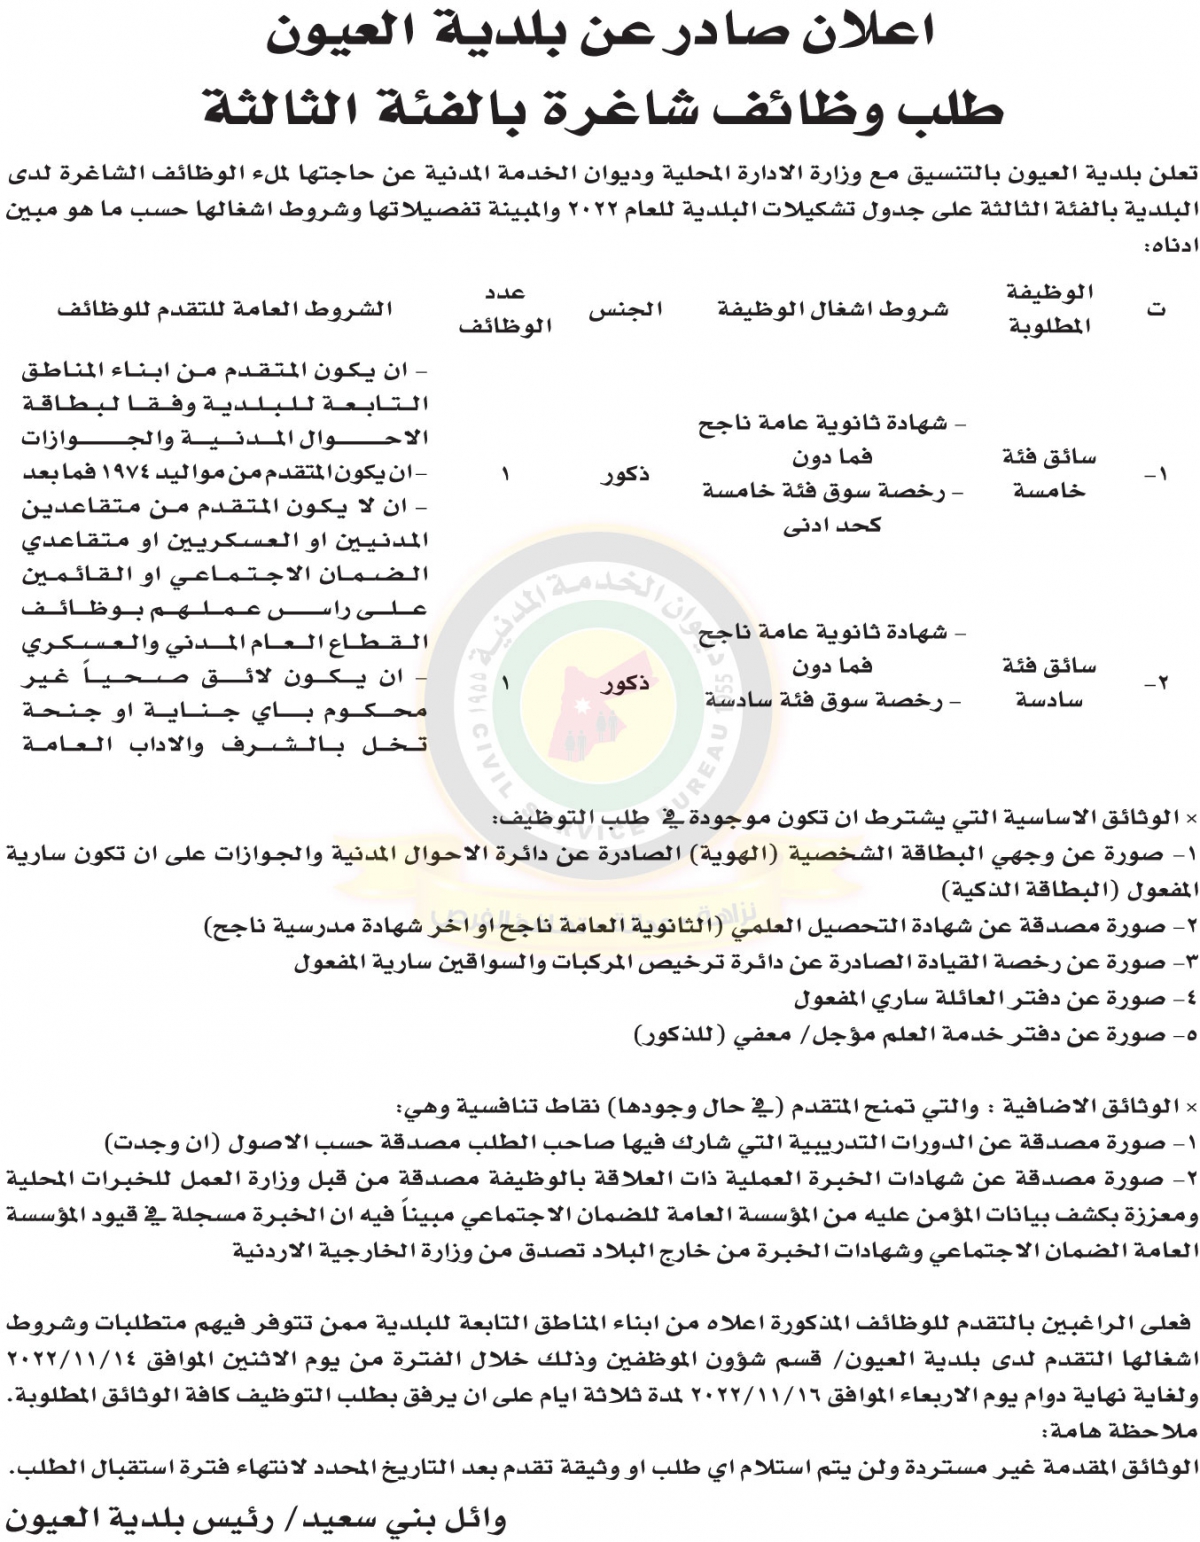 اعلان وظائف شاغرة بالفئة الثالثة صادر عن بلدية العيون